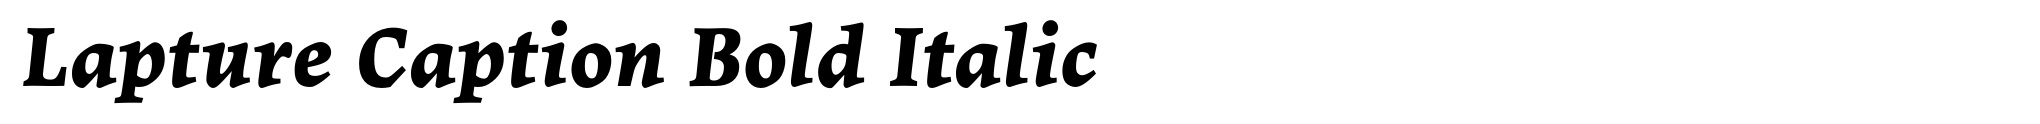 Lapture Caption Bold Italic image